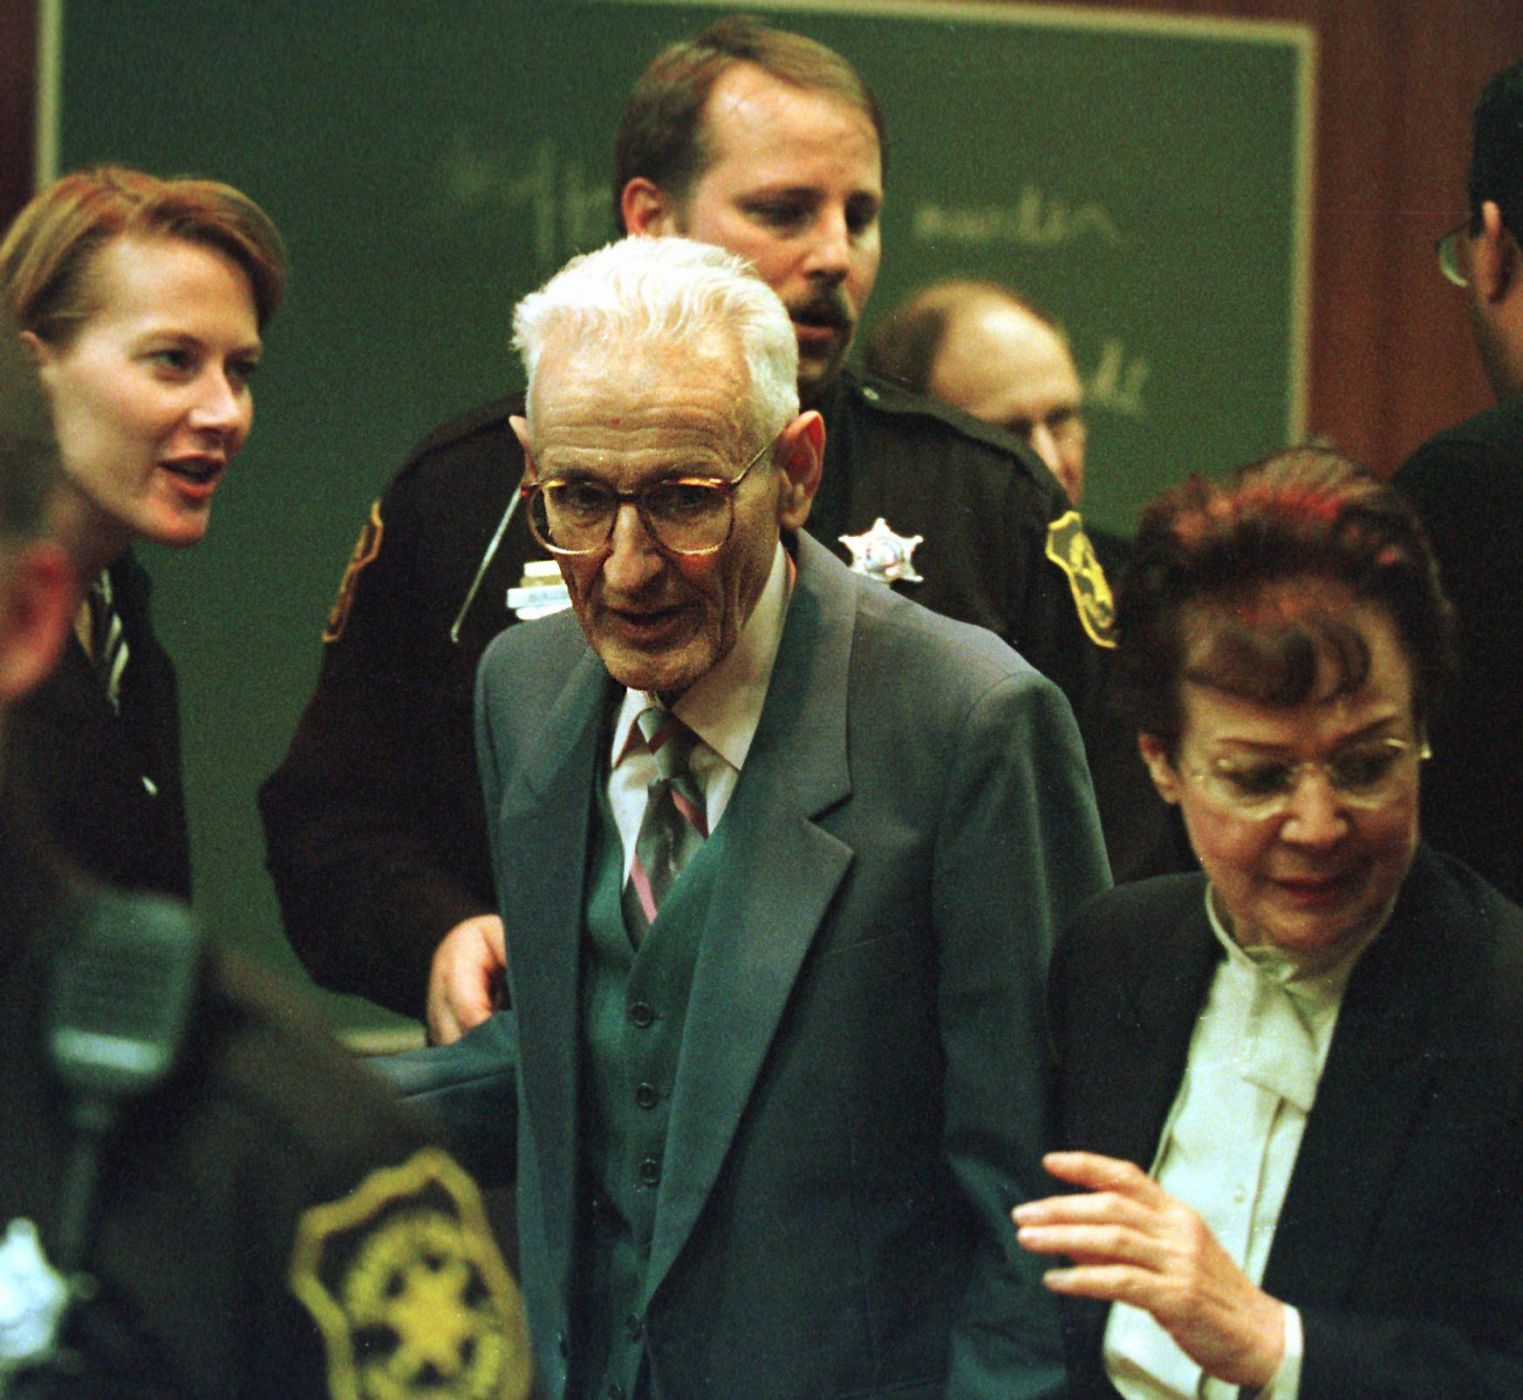 Imagen de Kevorkian tomada en 1999, a la salida del juicio por ayudar a morir a un enfermo terminal.